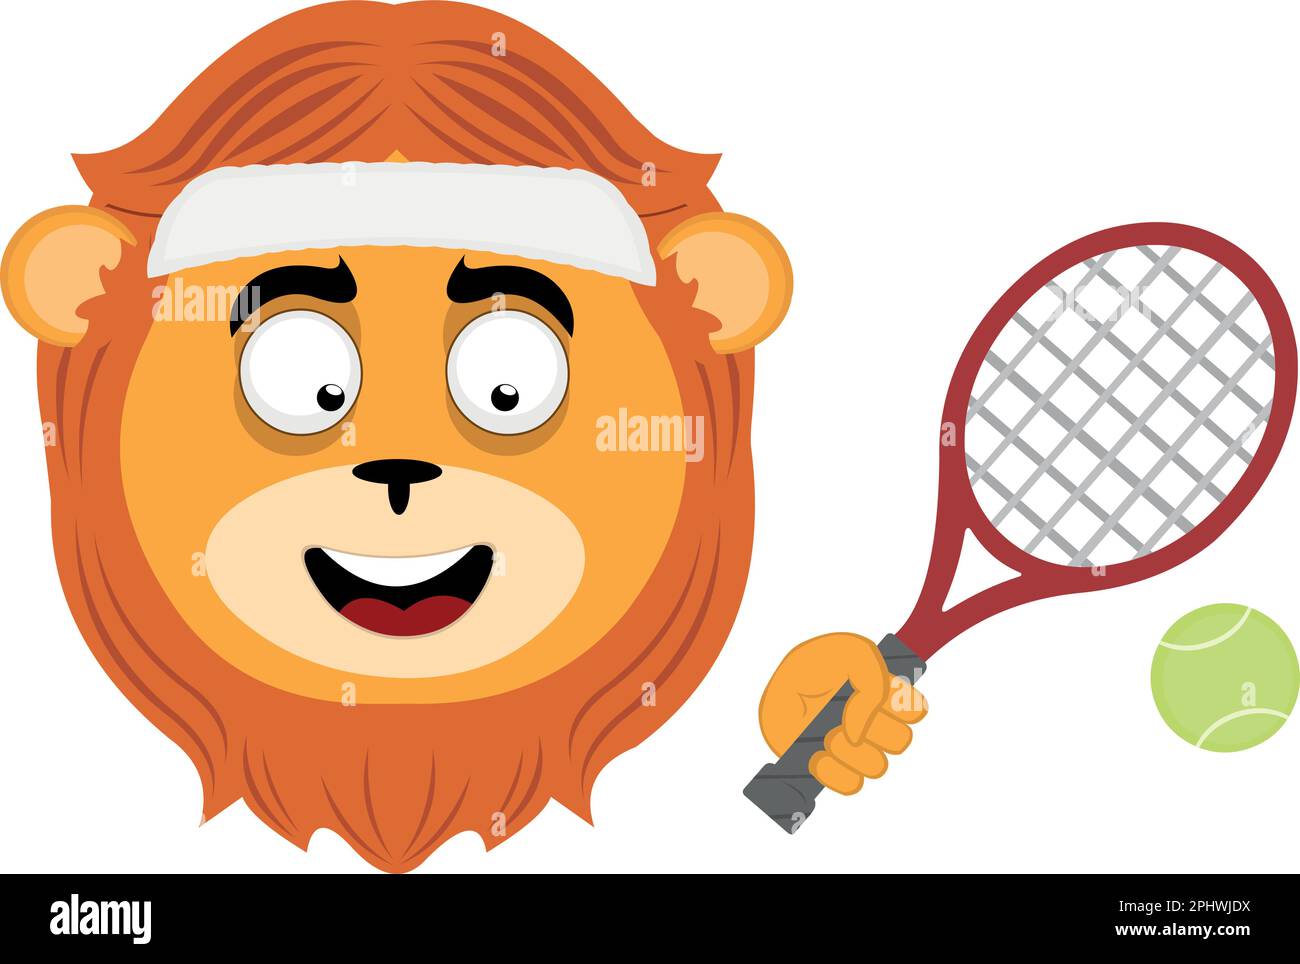 Illustration vectorielle du visage de Leon Cartoon heureux, avec un bandeau, une raquette et une balle de tennis Illustration de Vecteur